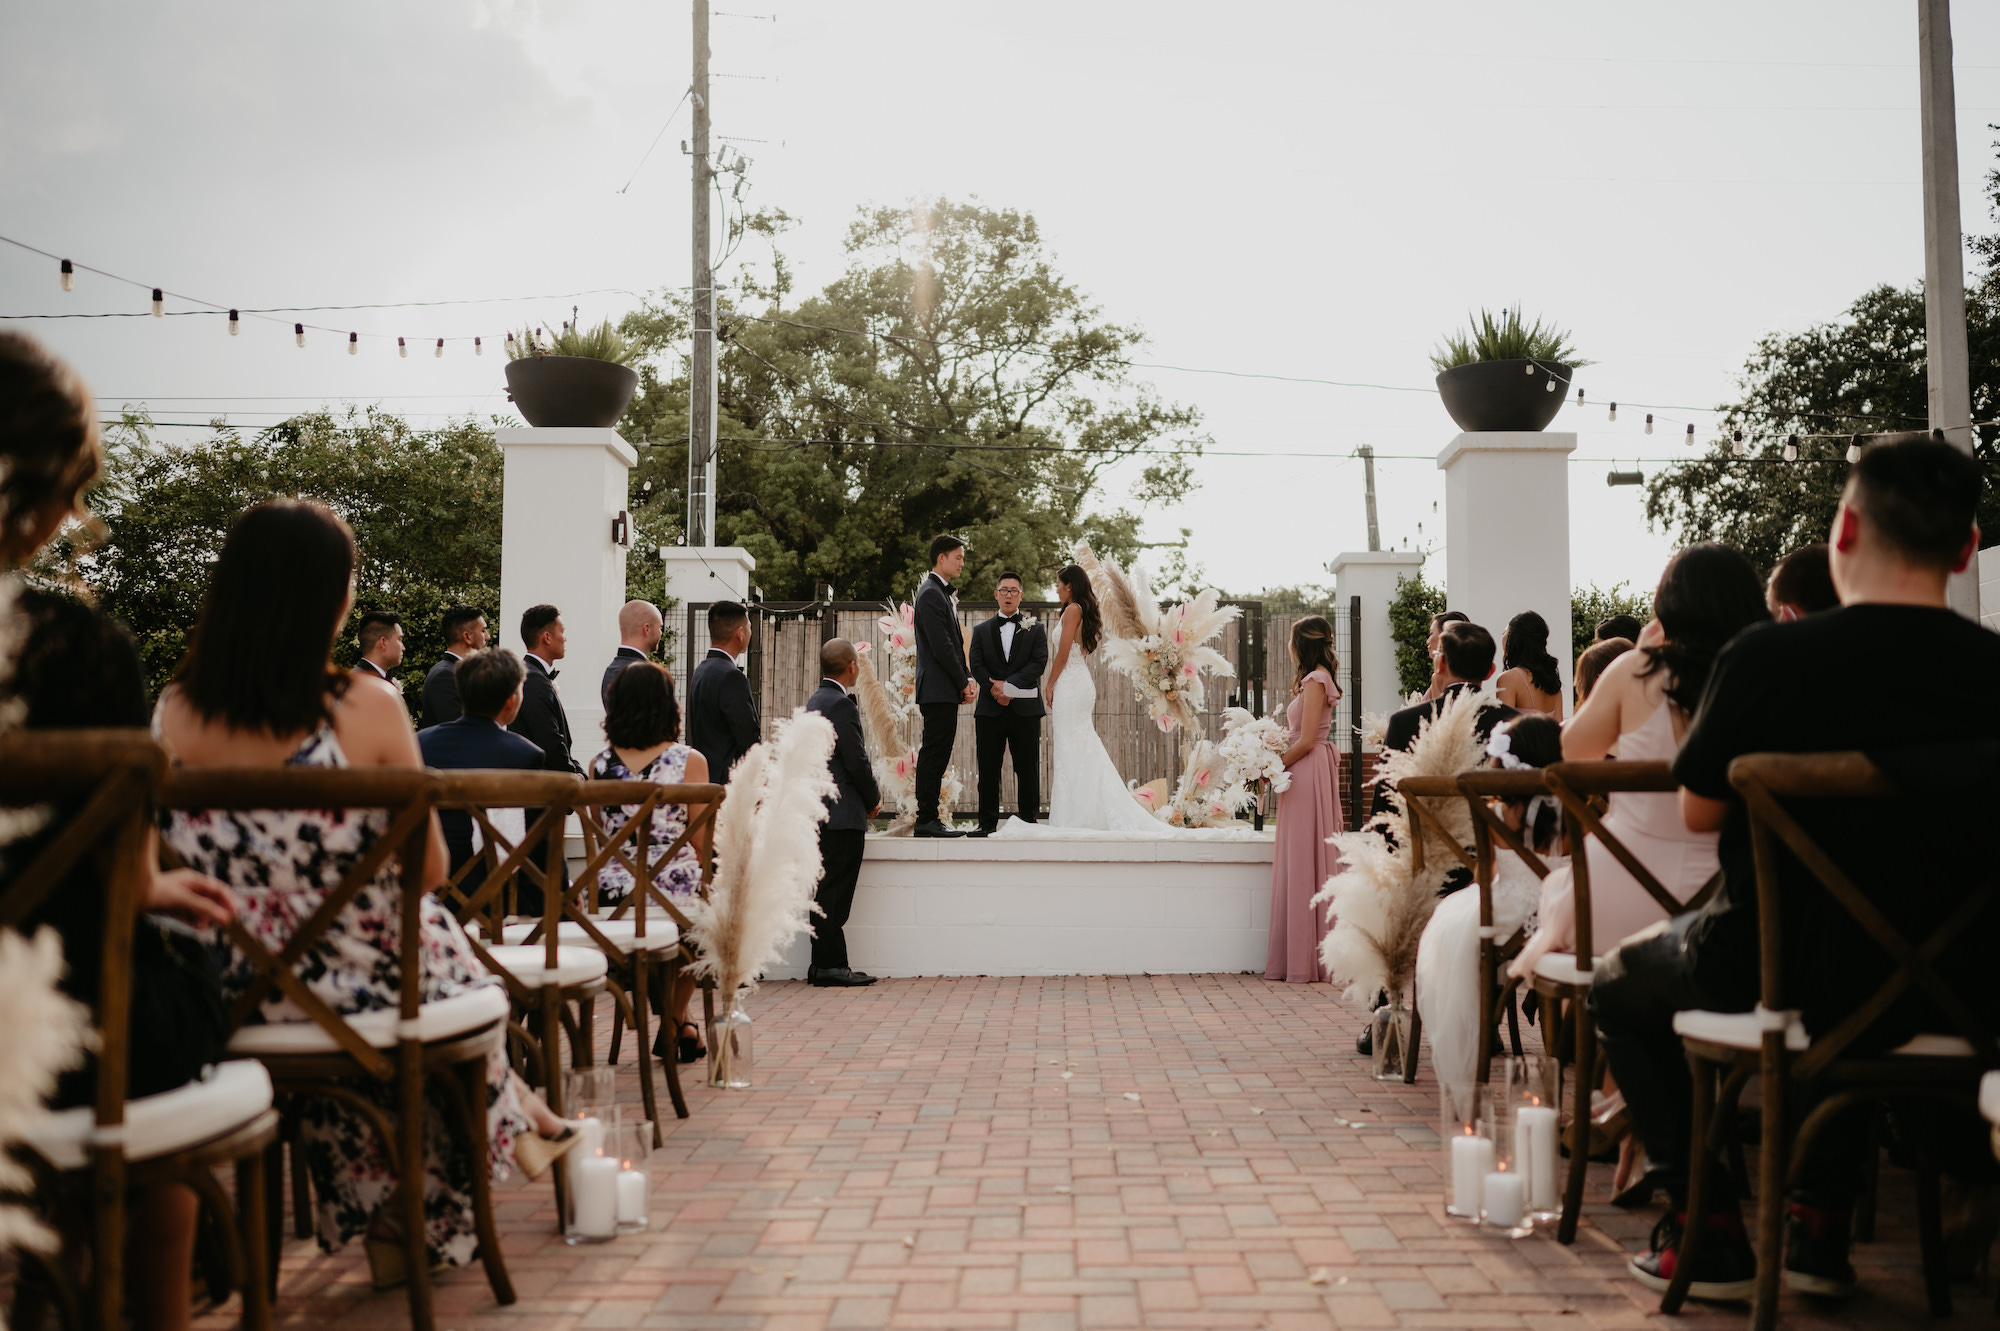 Bride and Groom Exchange Vows | Outdoor Bohemian Wedding Ceremony | Florida Venue Haus 820